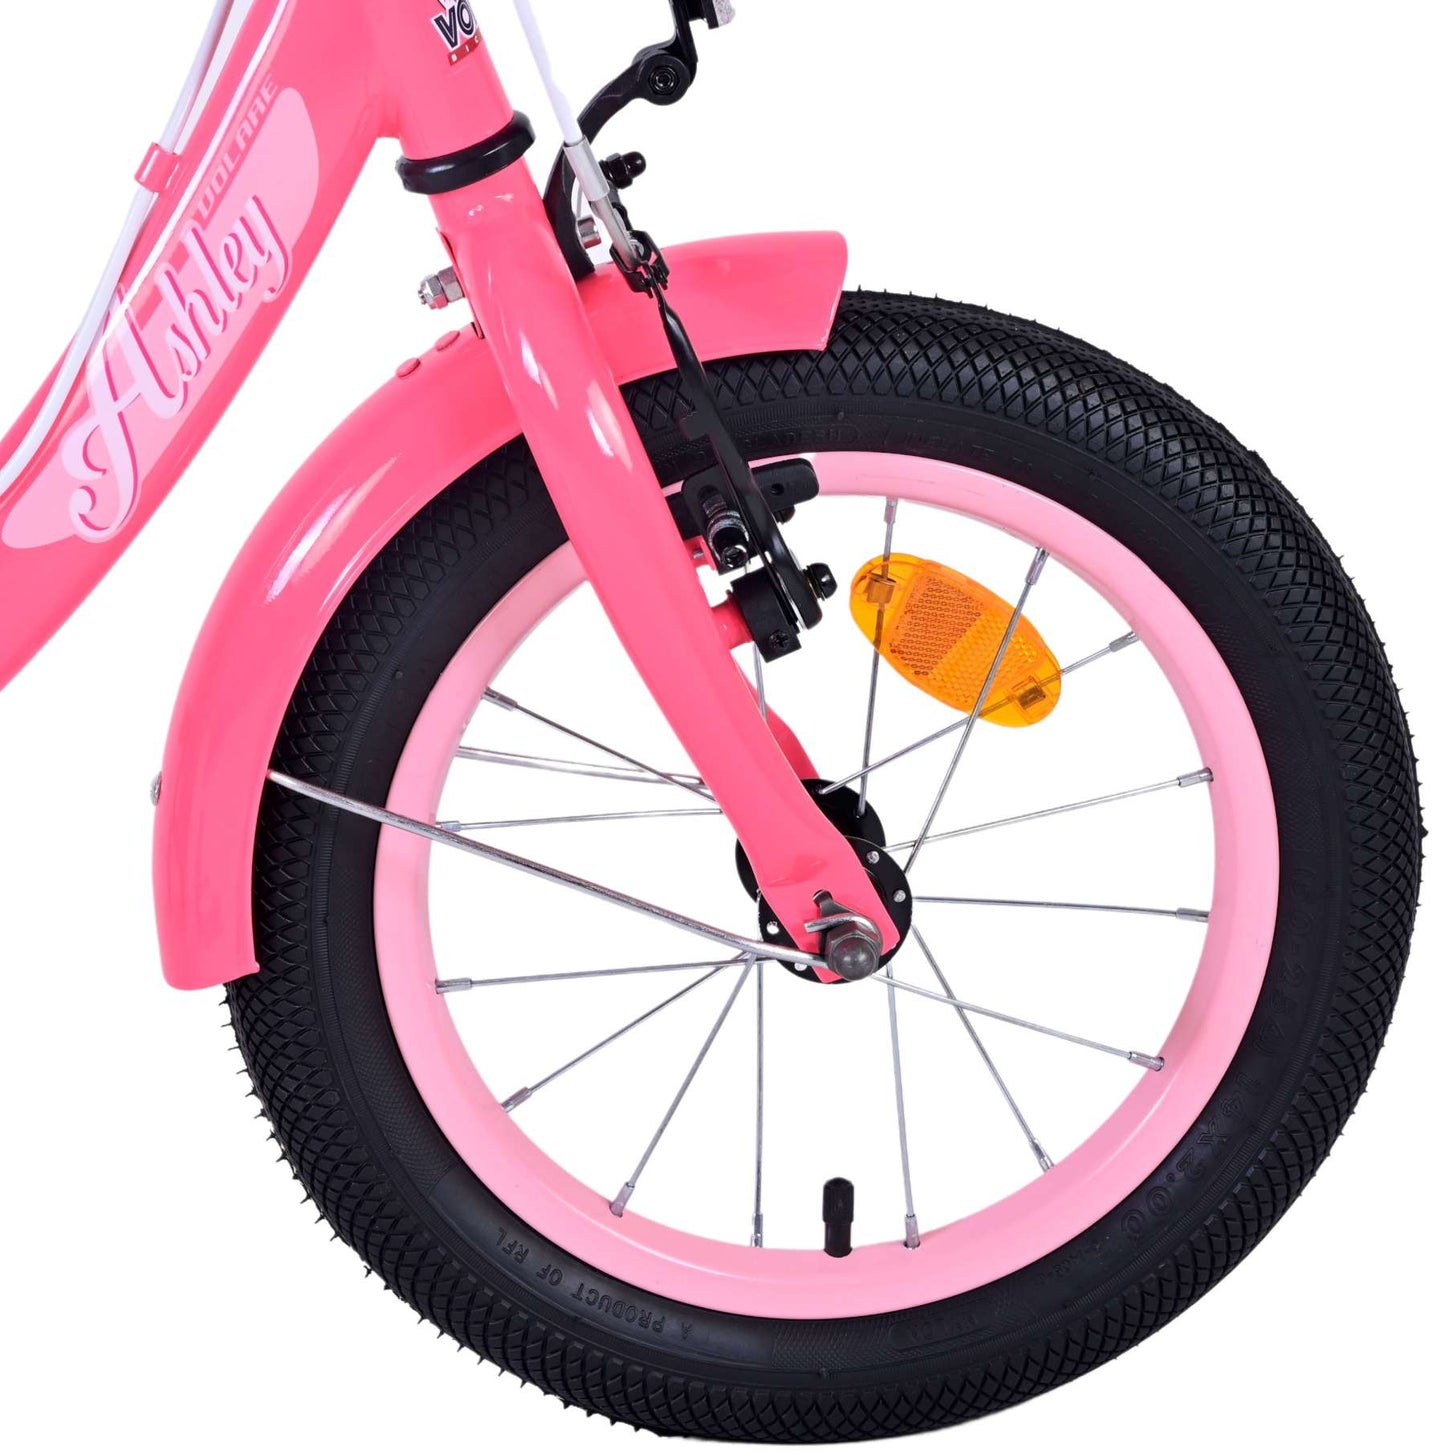 Bicycle per bambini di Vlatare Ashley - Girls - 14 pollici - Rosso rosa - Freni a due mani